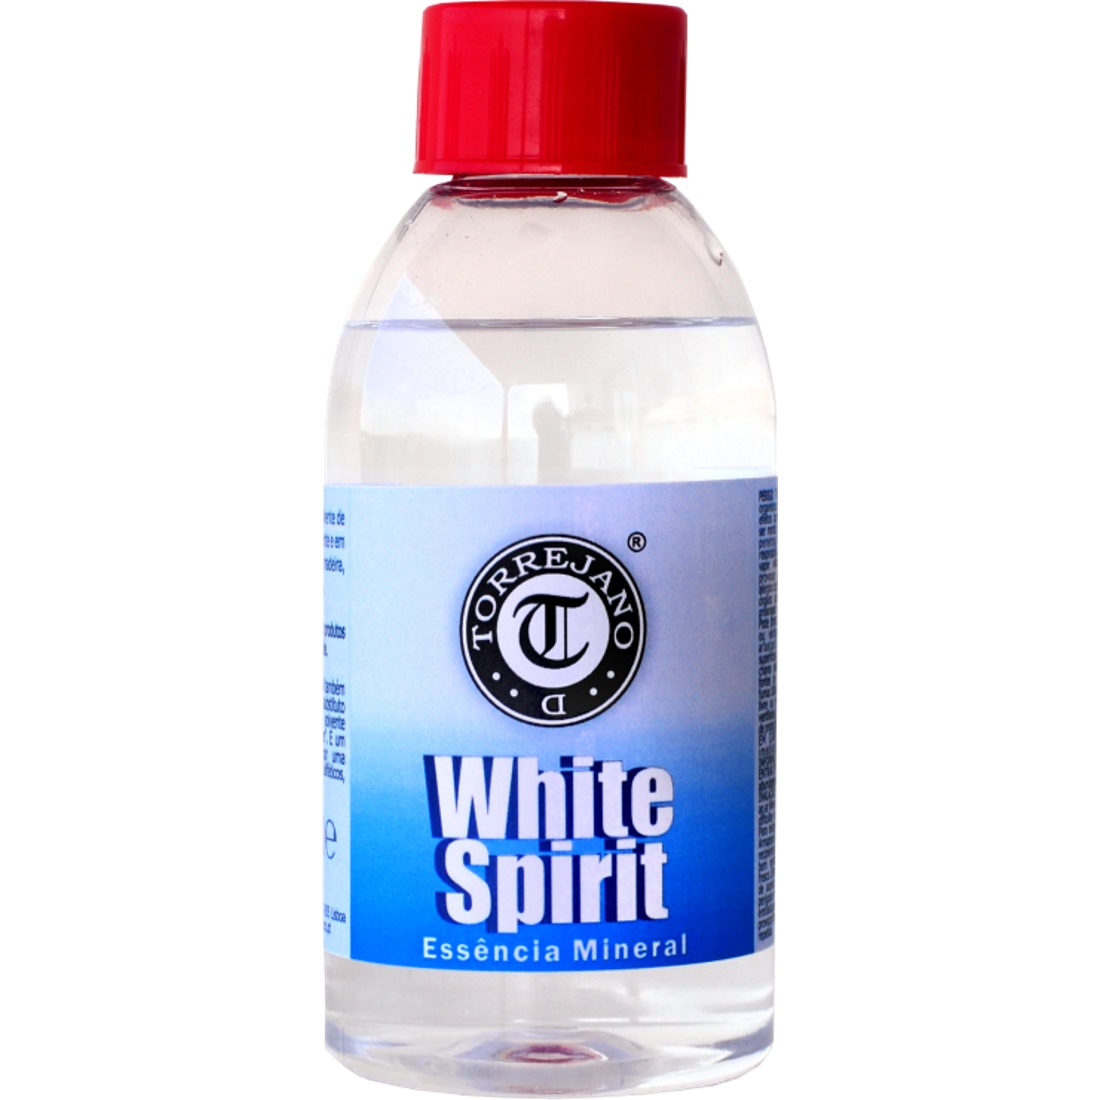 Essência Mineral White Spirit da D.Torrejano